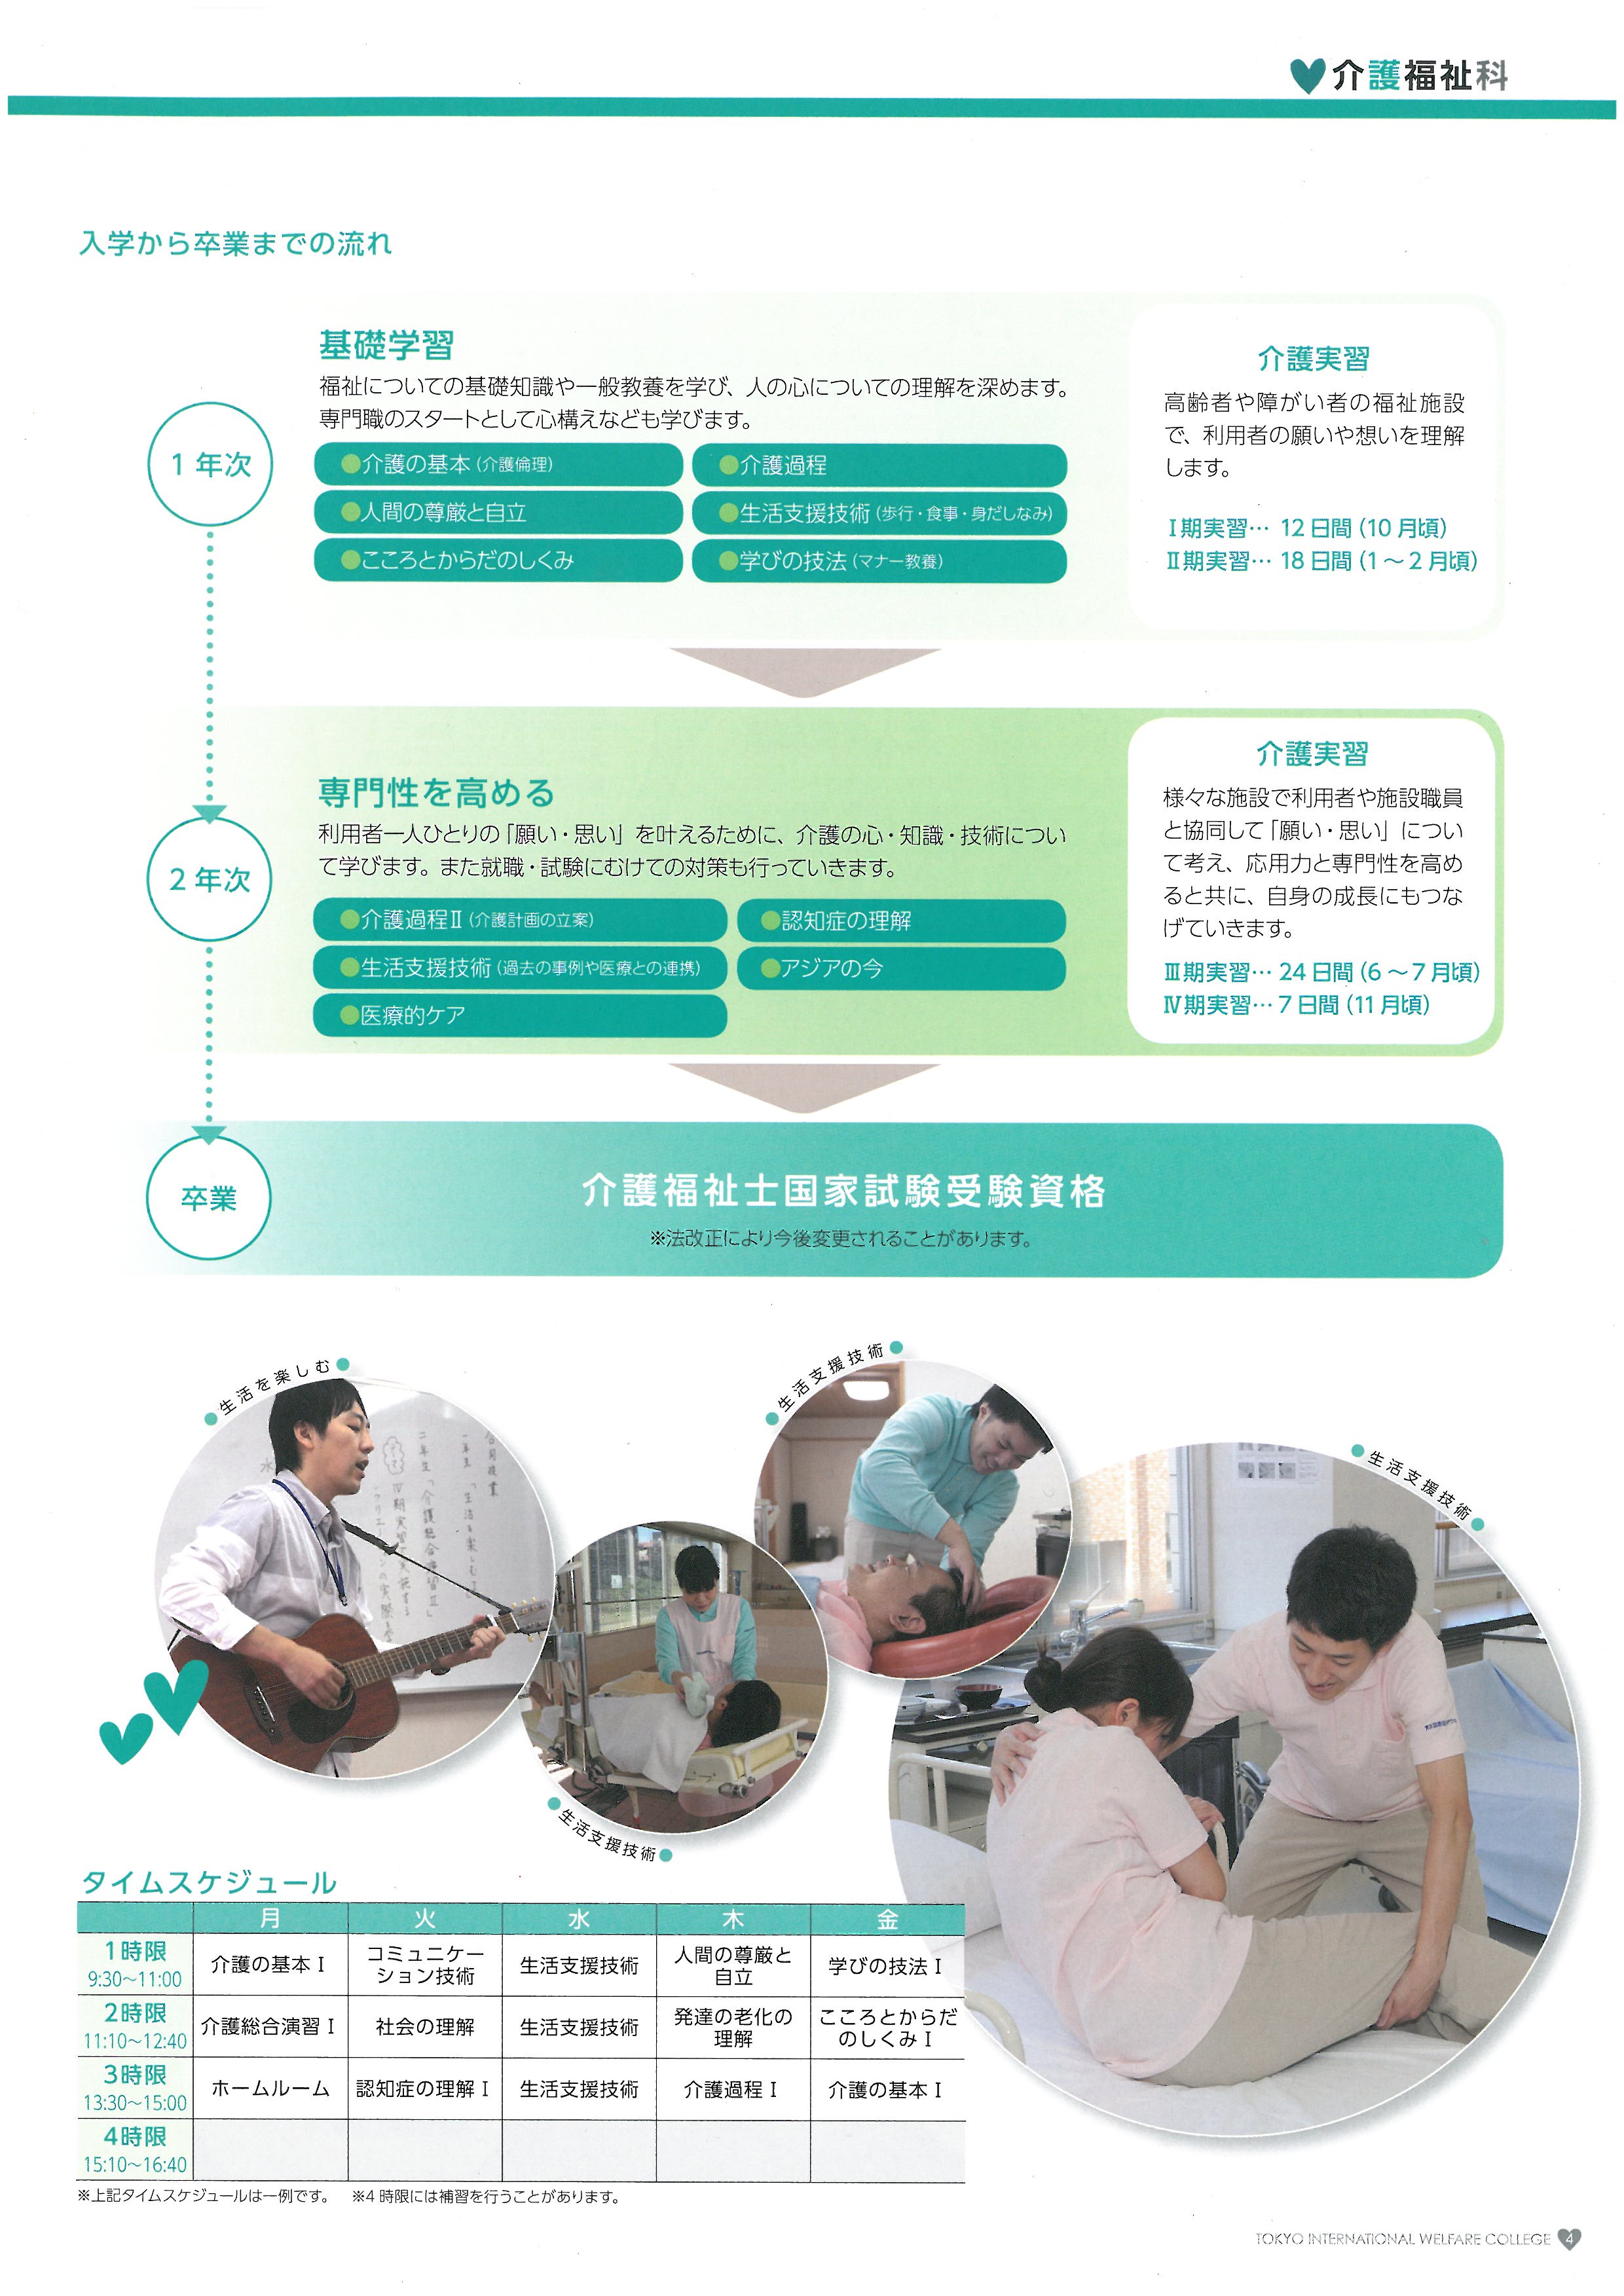 도쿄 국제복지전문학교 홍보 팜플렛 05.jpg